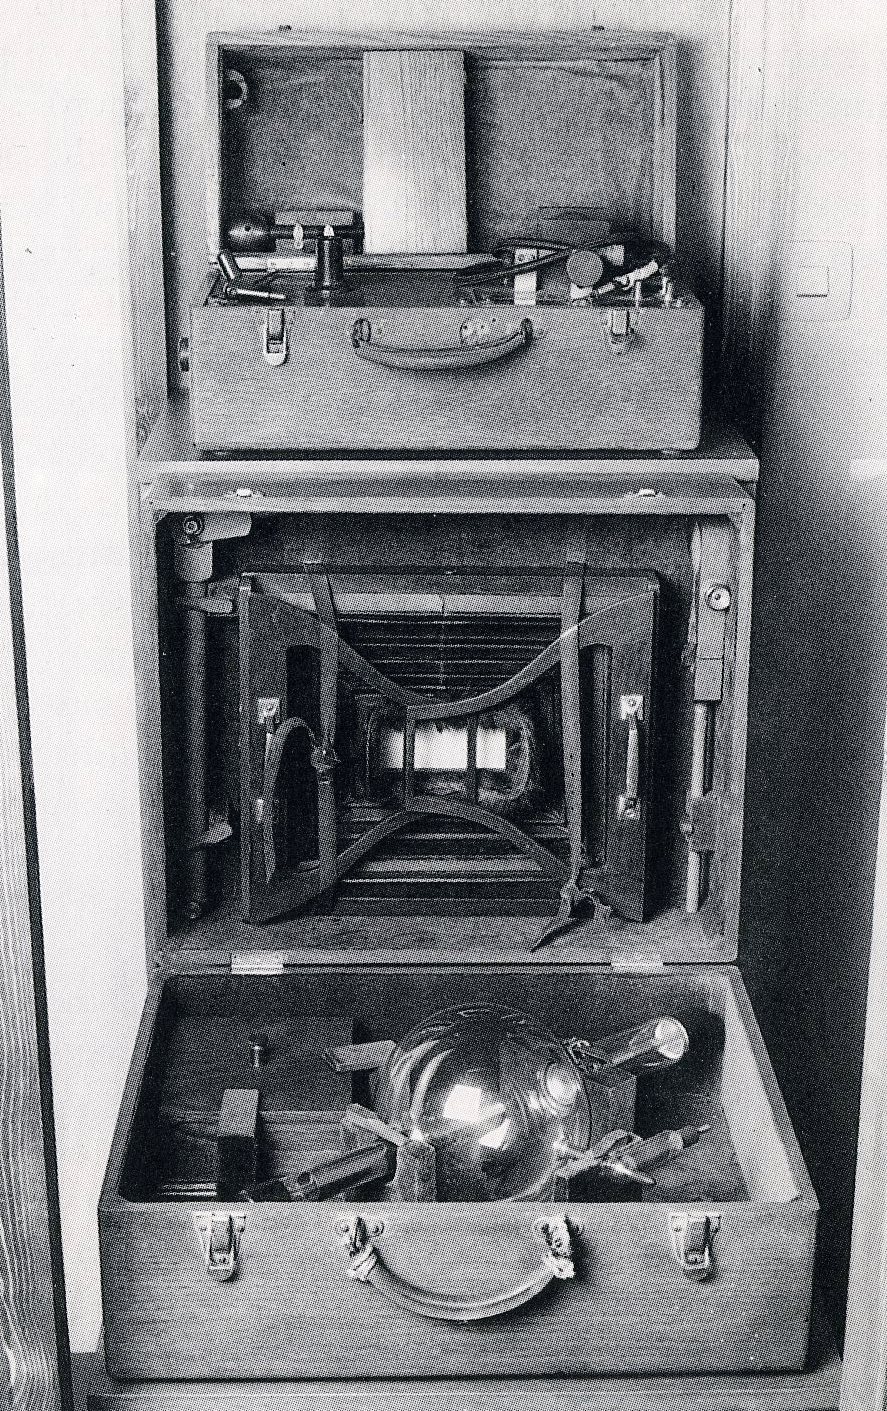 Aparell generador de raig X portàtil creat per J. Sánchez per formar una instal·lació fixa. Aquest és un dels models que es van començar a utilitzar els radiòlegs espanyols el 1914. 